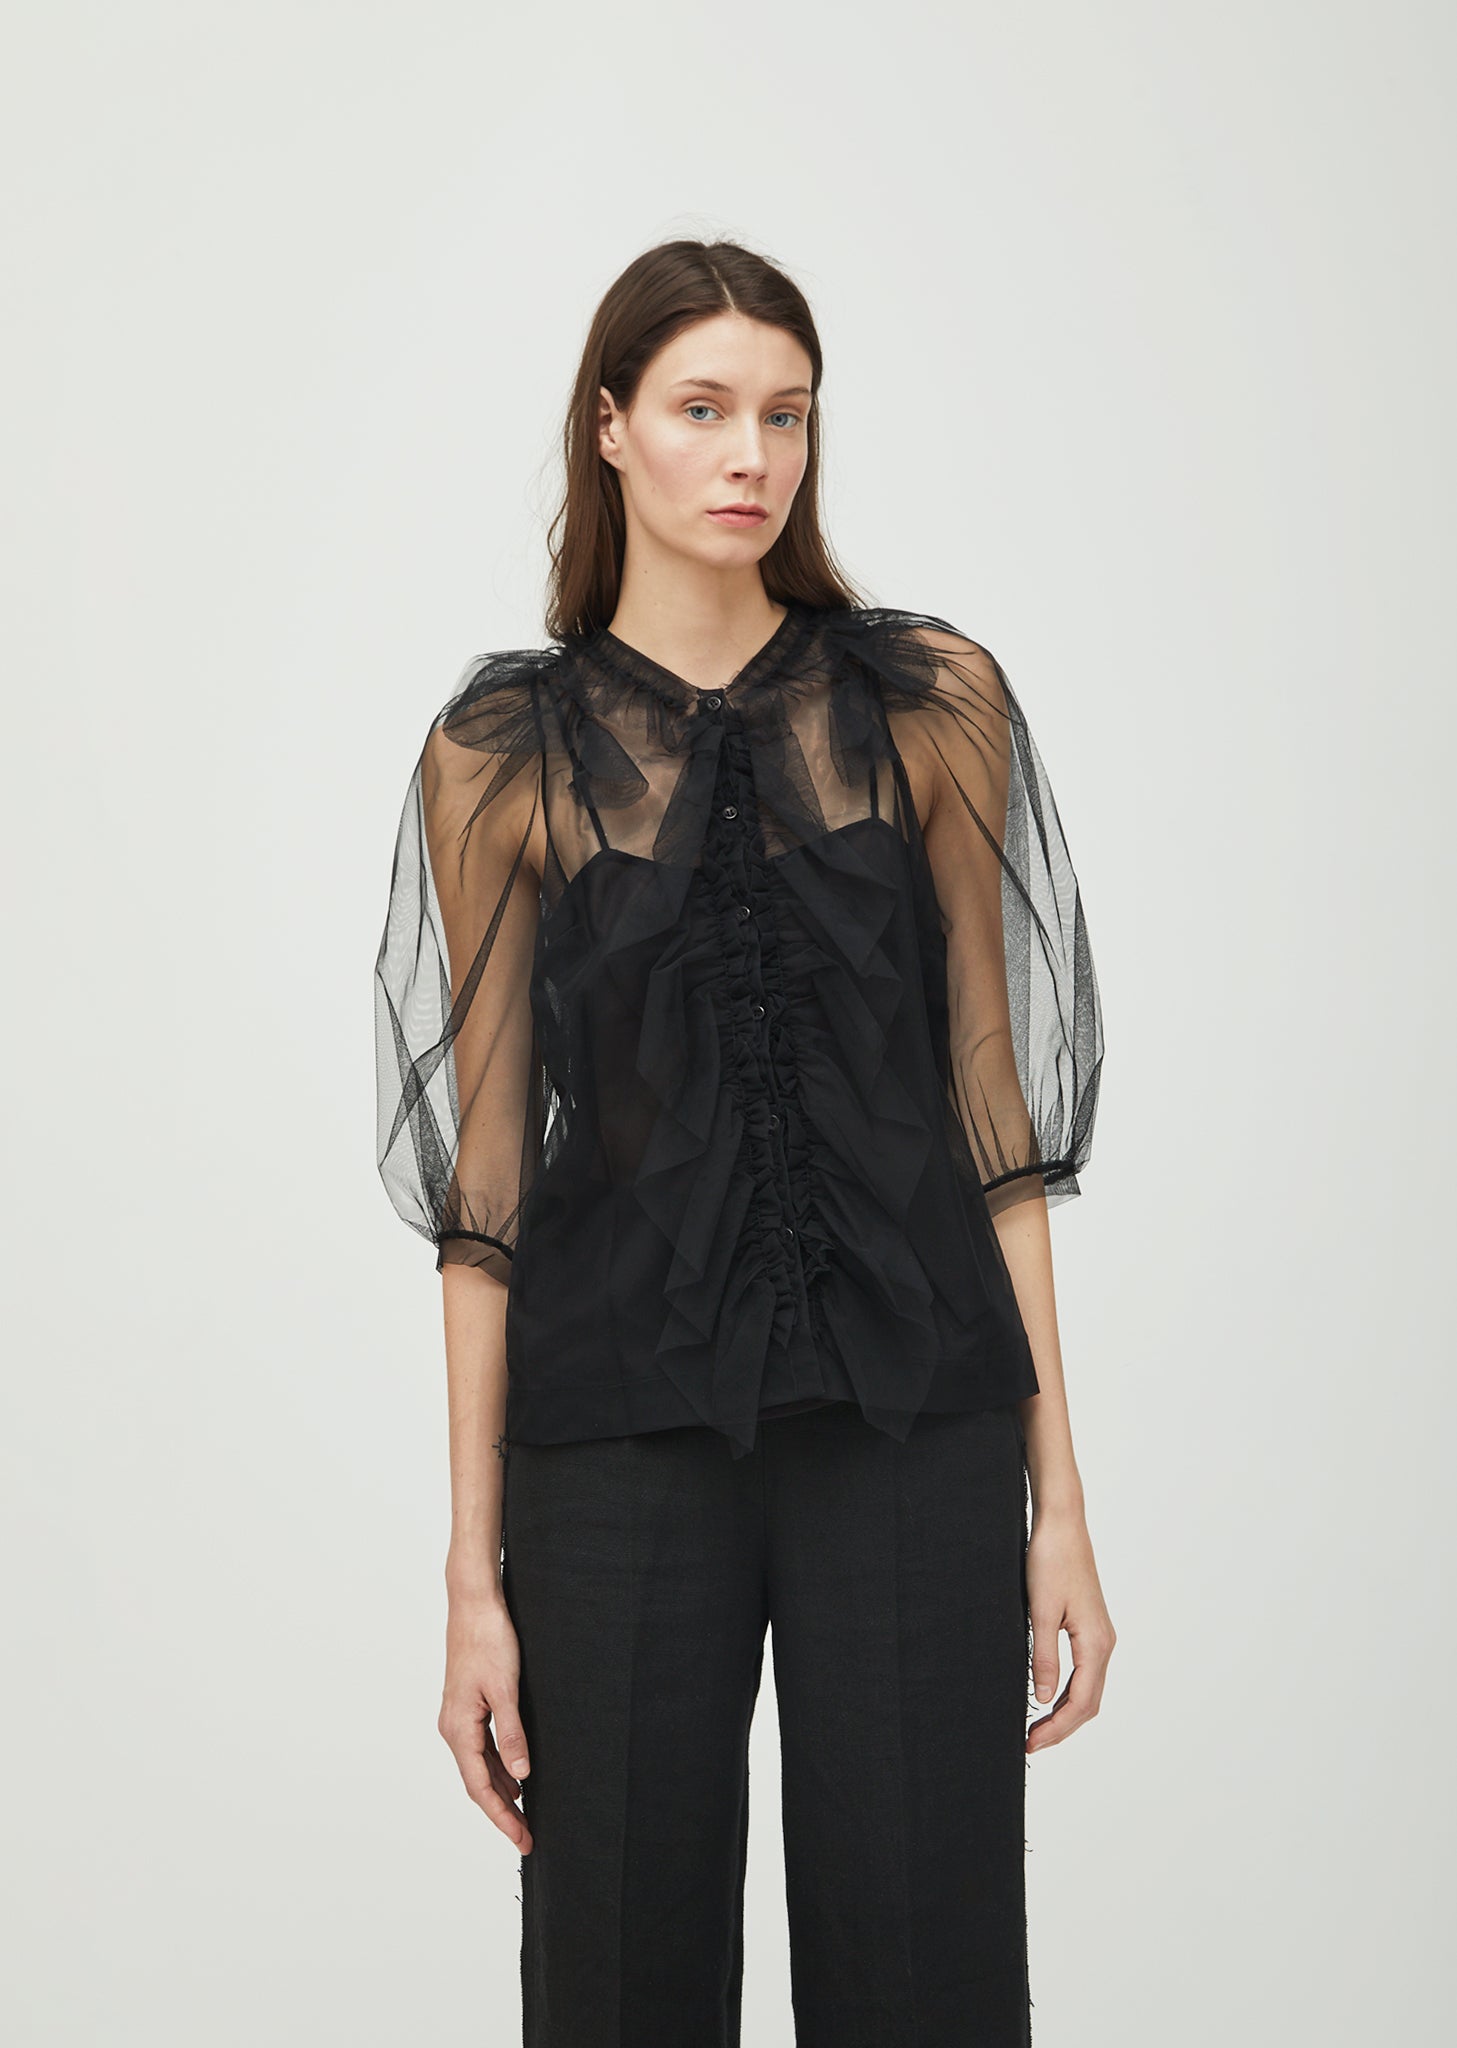 最終価格です。シモーネロシャ × H&M チュールデザインTシャツドレスSワンピース